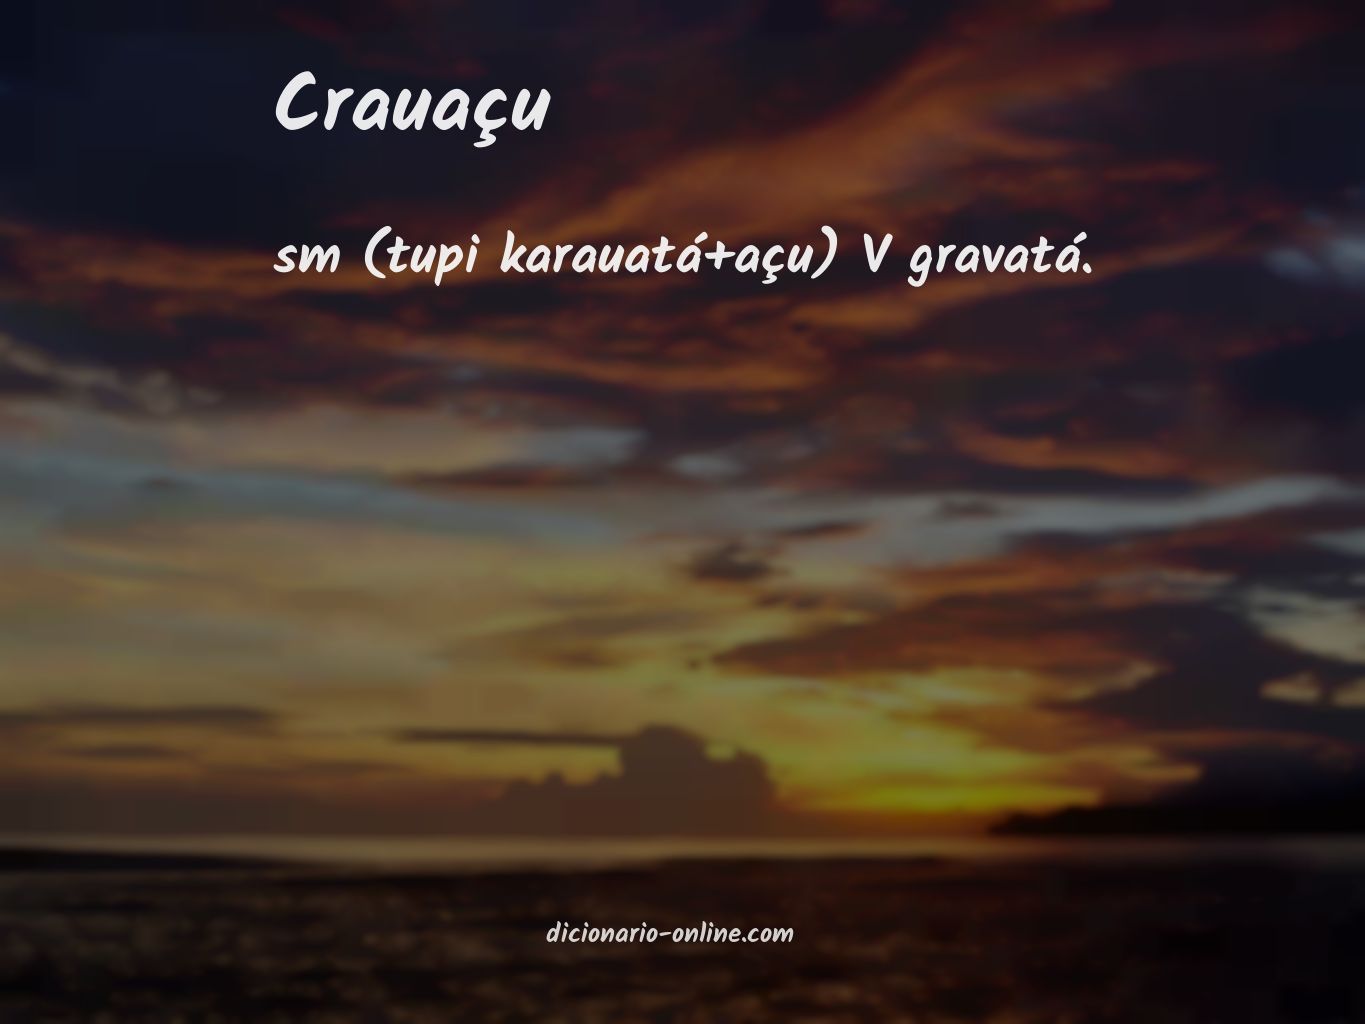 Significado de crauaçu